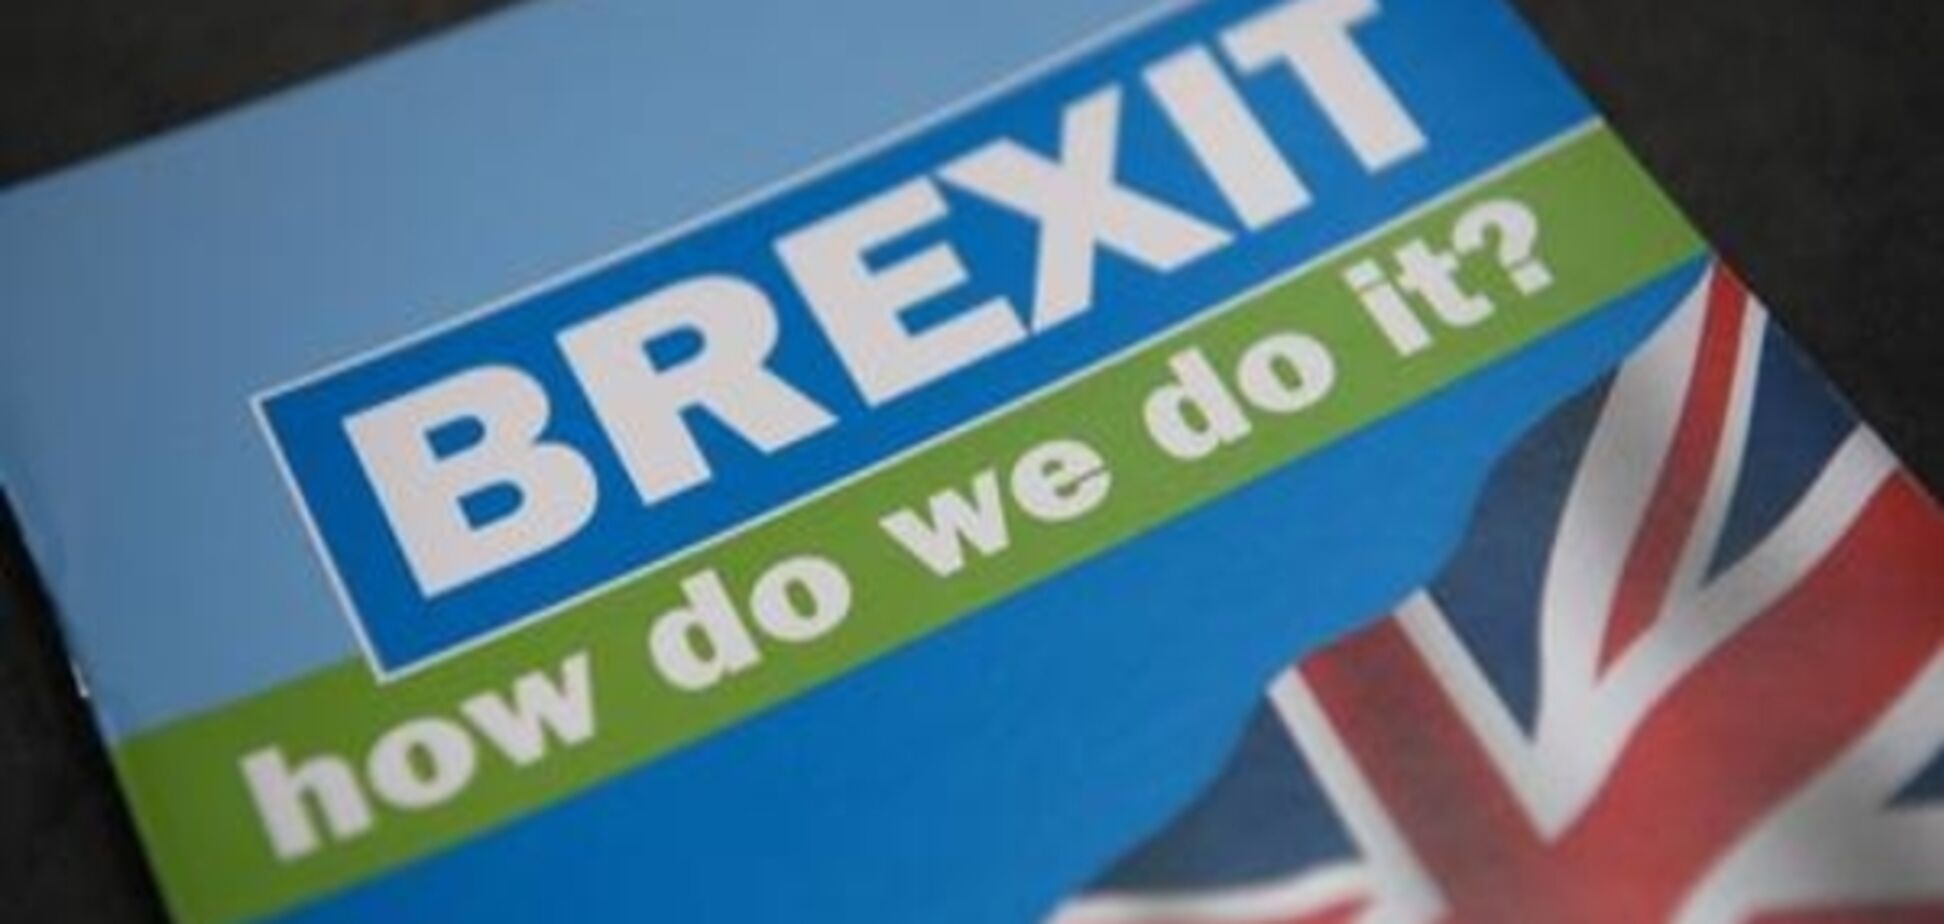 Коментар: Brexit як однозначний розрив - і новий початок?